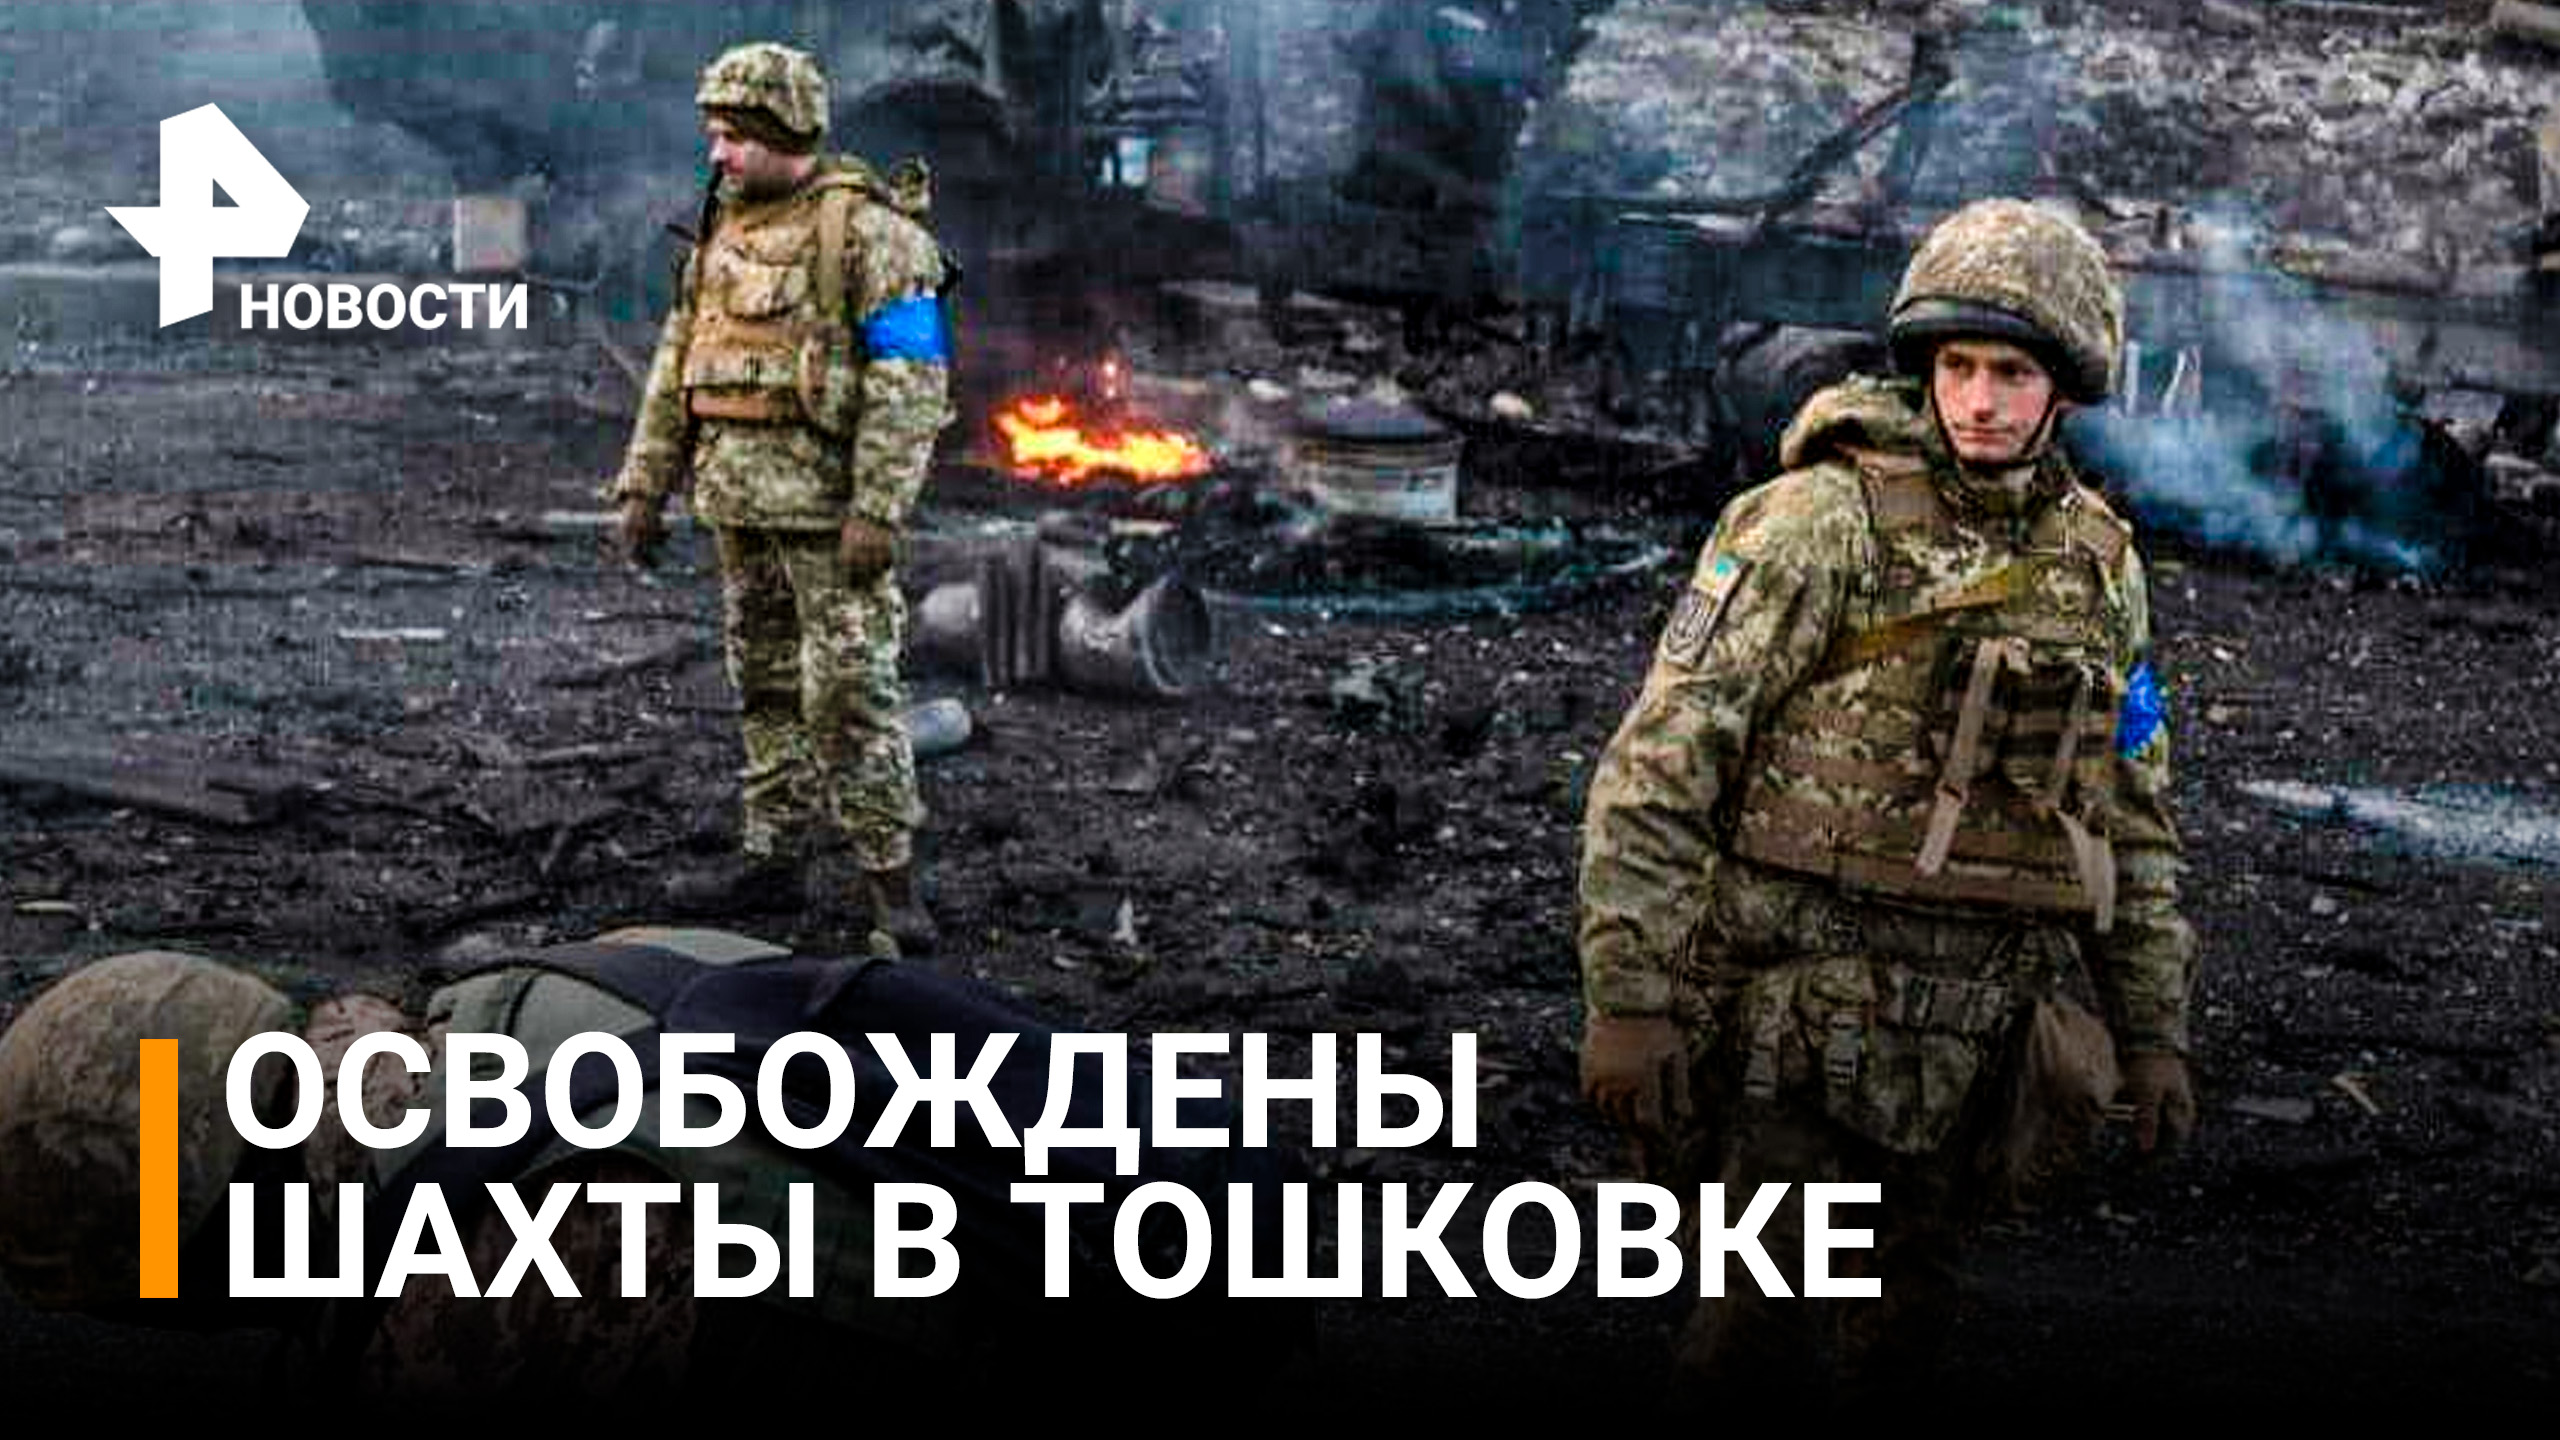 Танки и артиллерия: бойцы ЛНР освободили шахты в Тошковке, идут бои за промзону / РЕН Новости